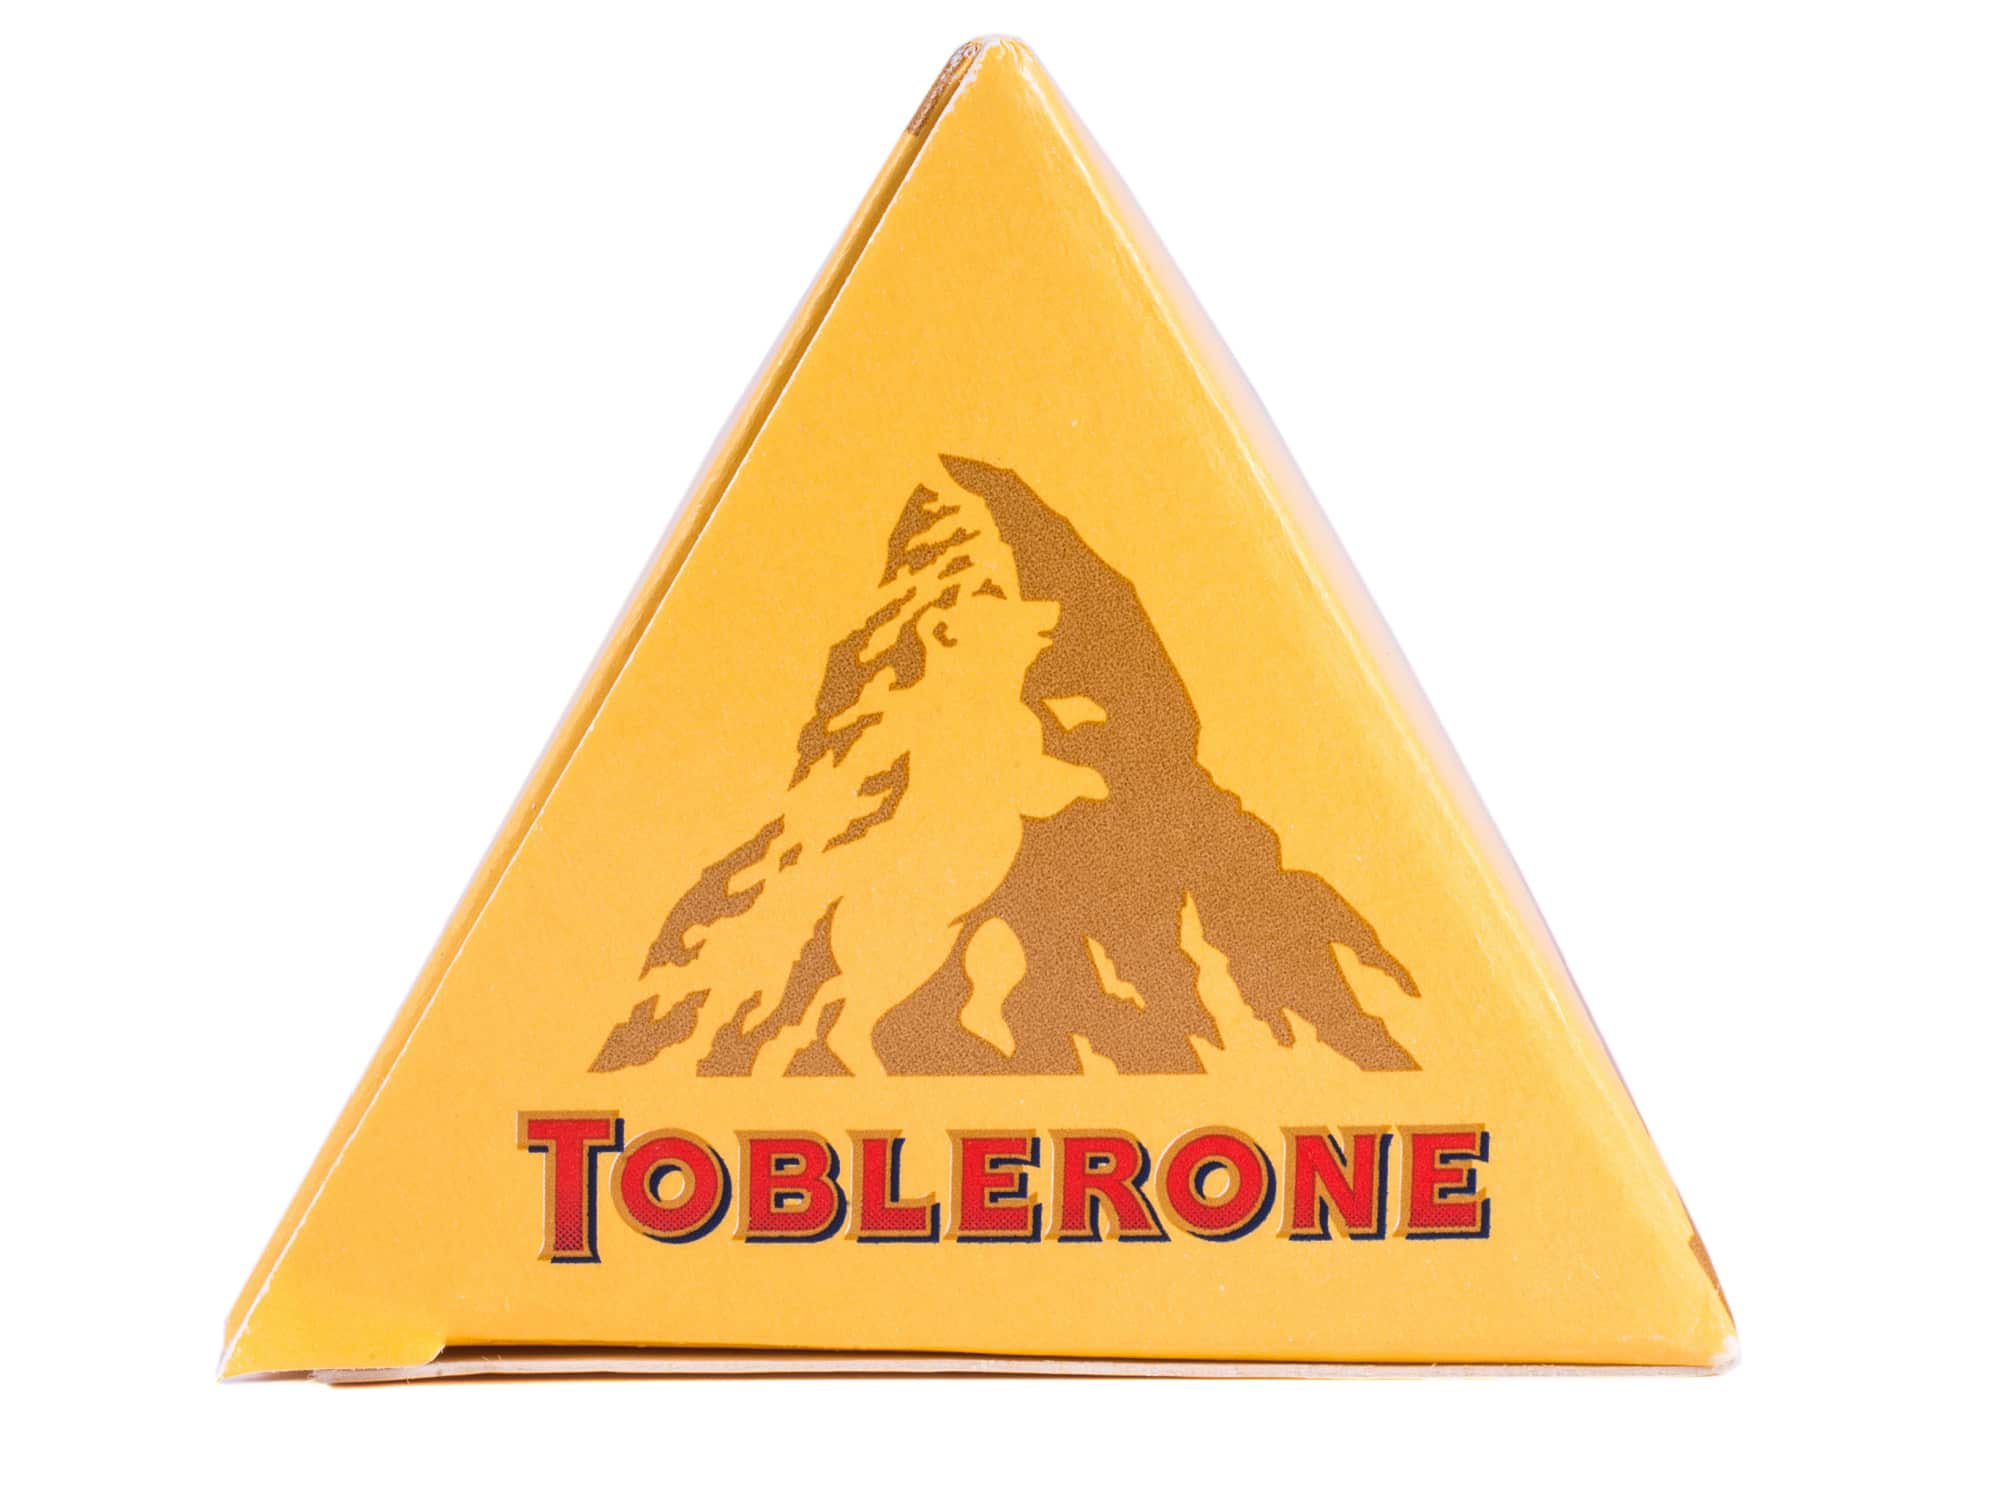  Hejdå, Toblerone Mountain: Berömd choklad byter logotyp - ta reda på varför!